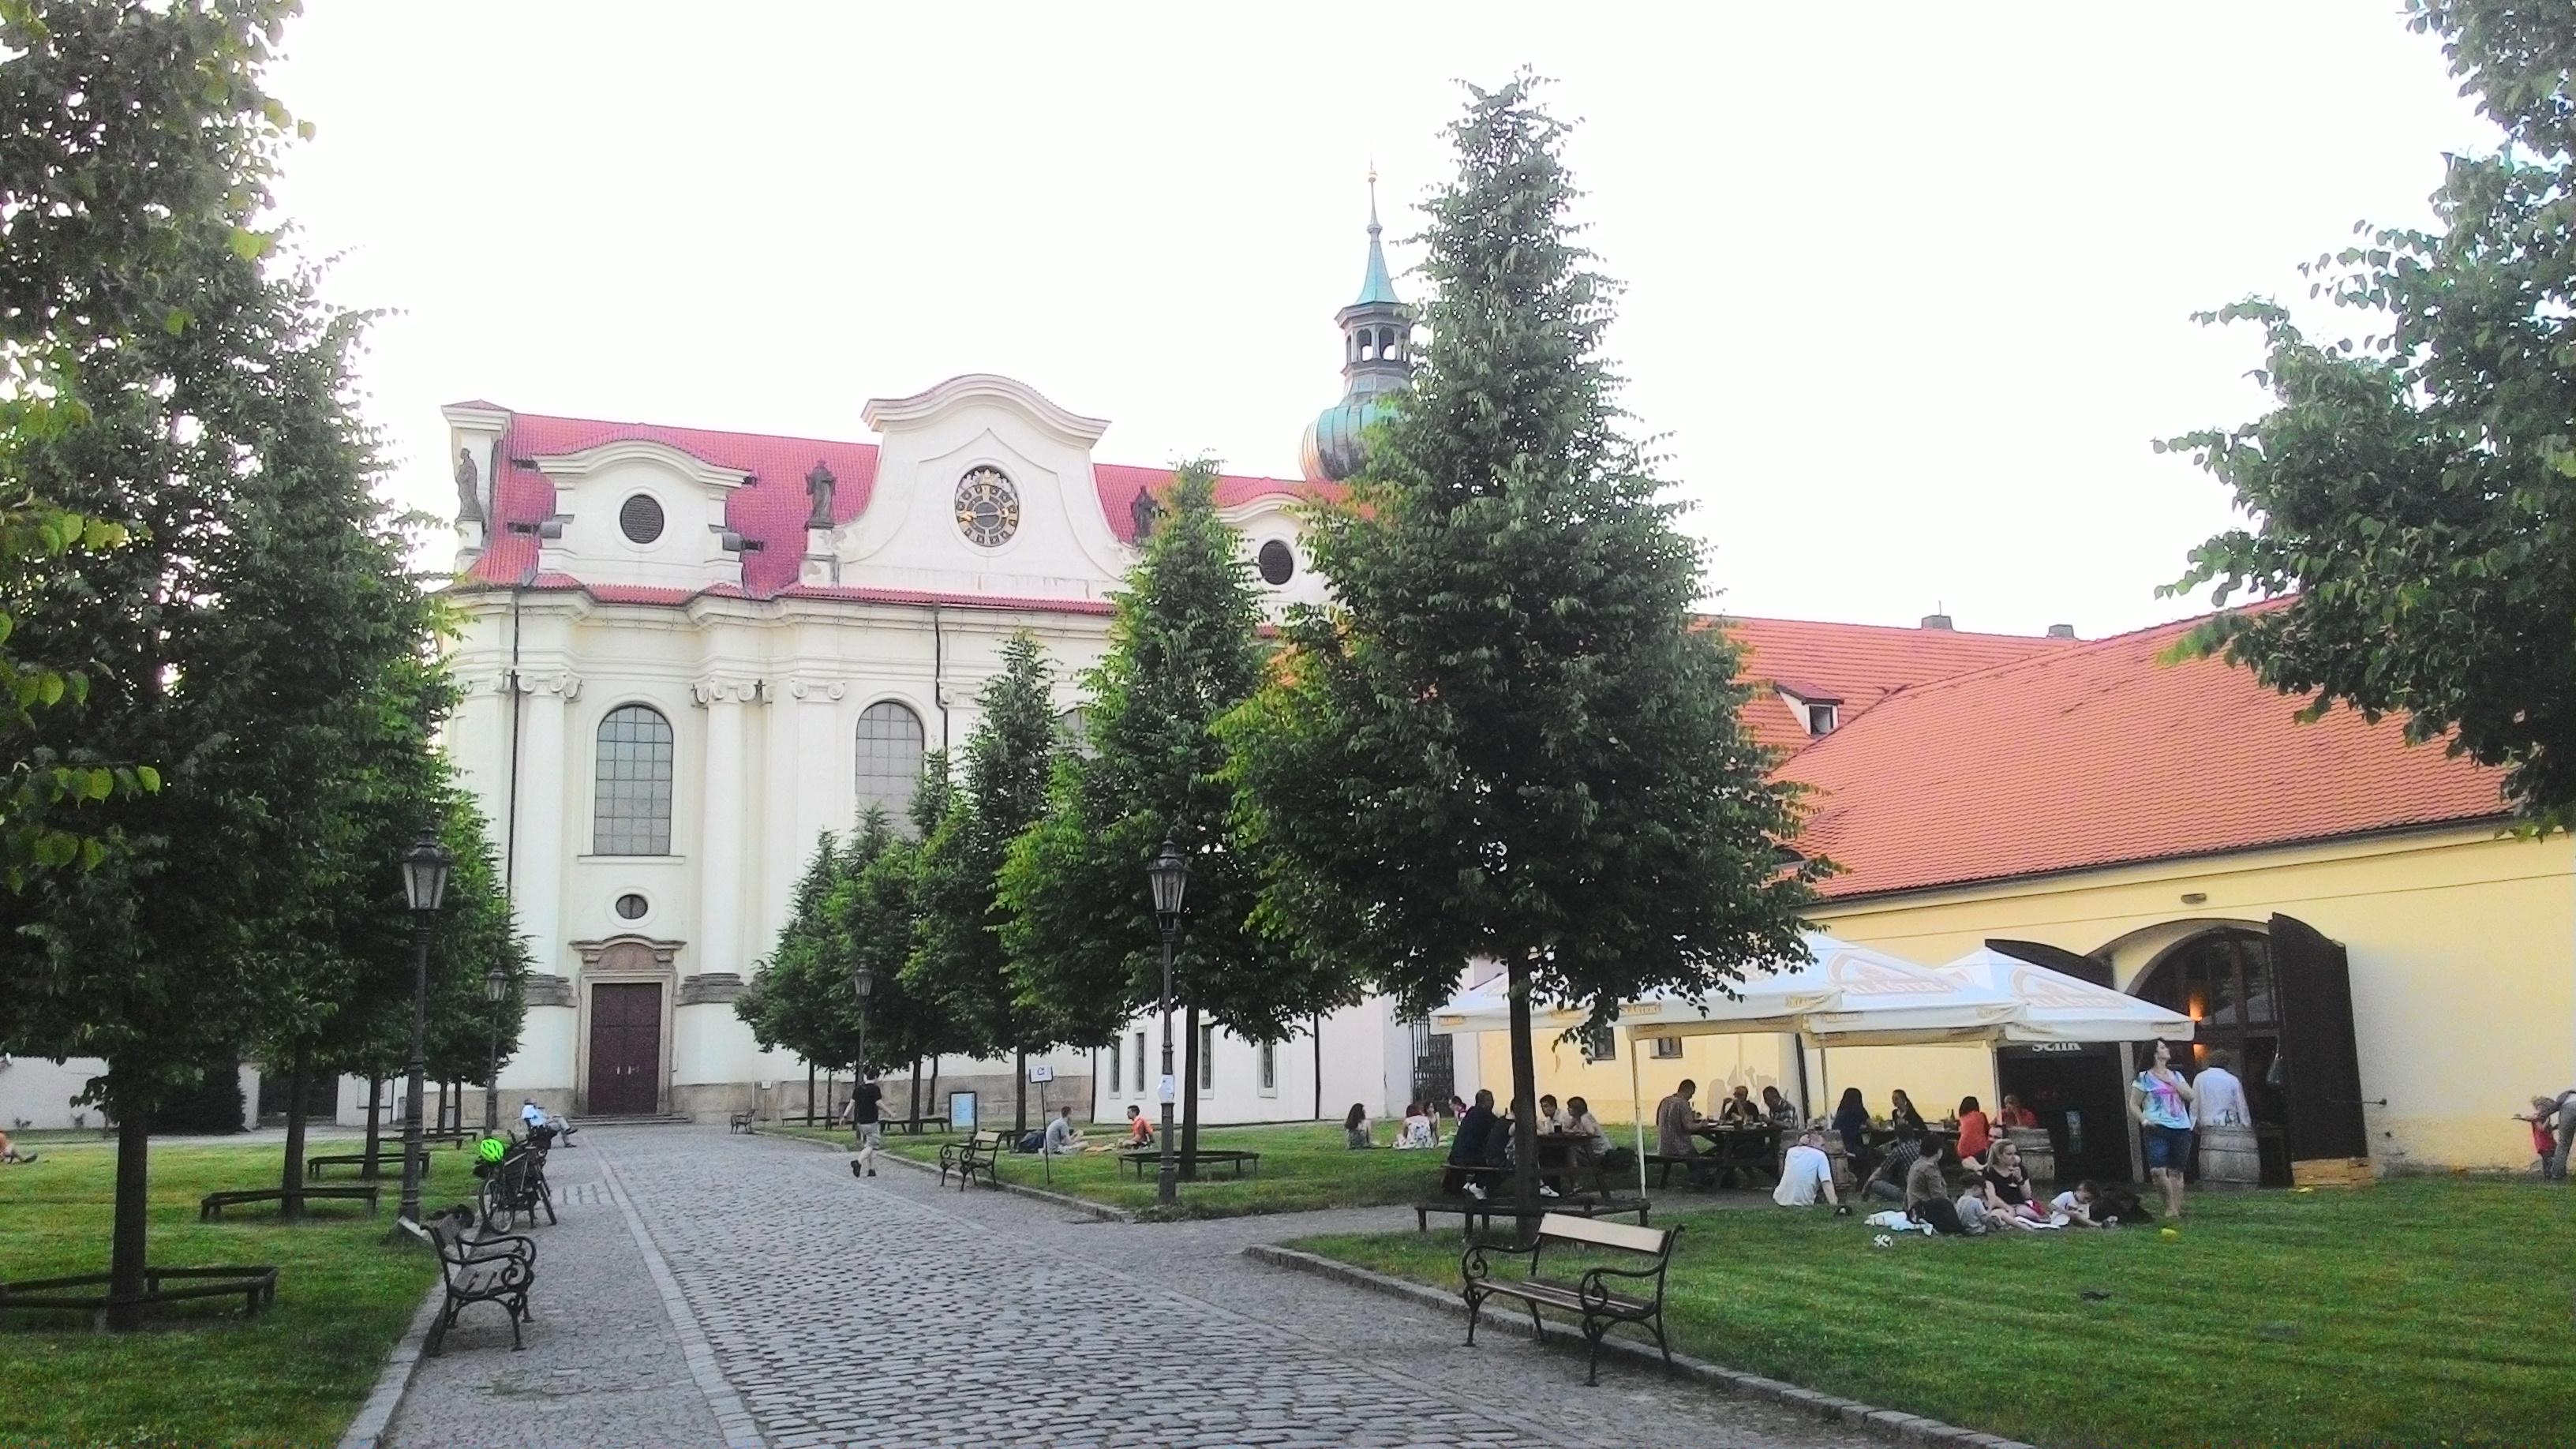 Cover image of this place Břevnovský klášter | Břevnov Monastery